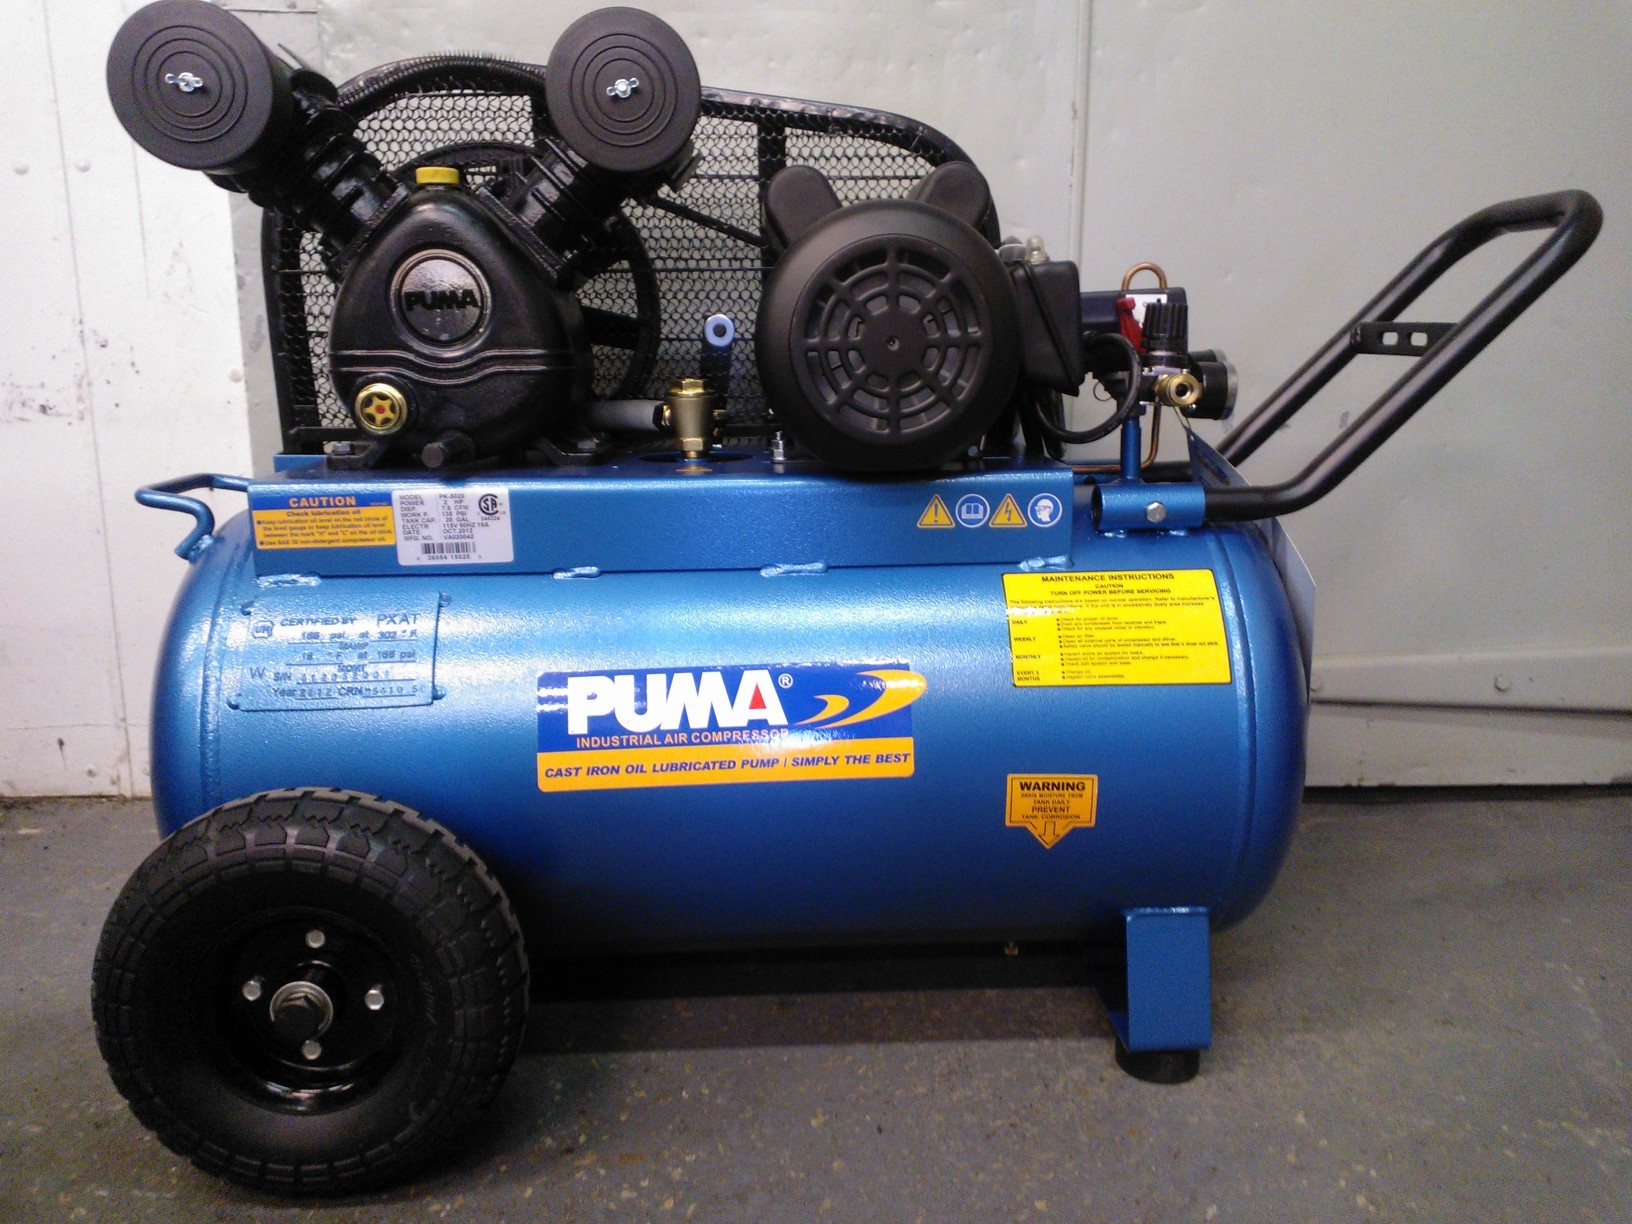 puma air compressor pk5020